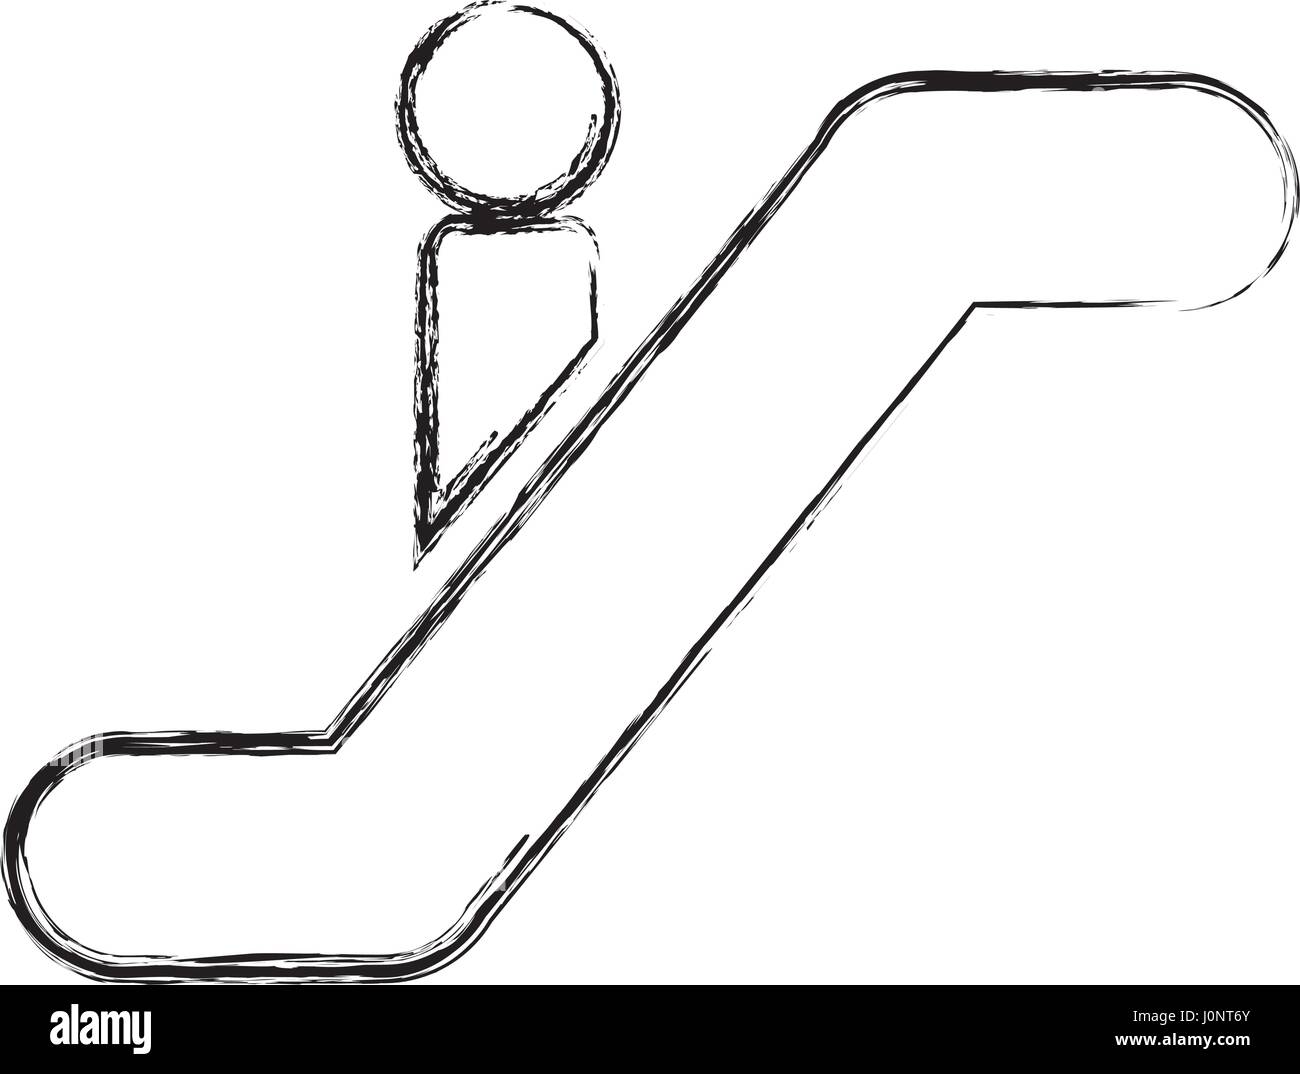 person silhouette in escalators Stock Vector